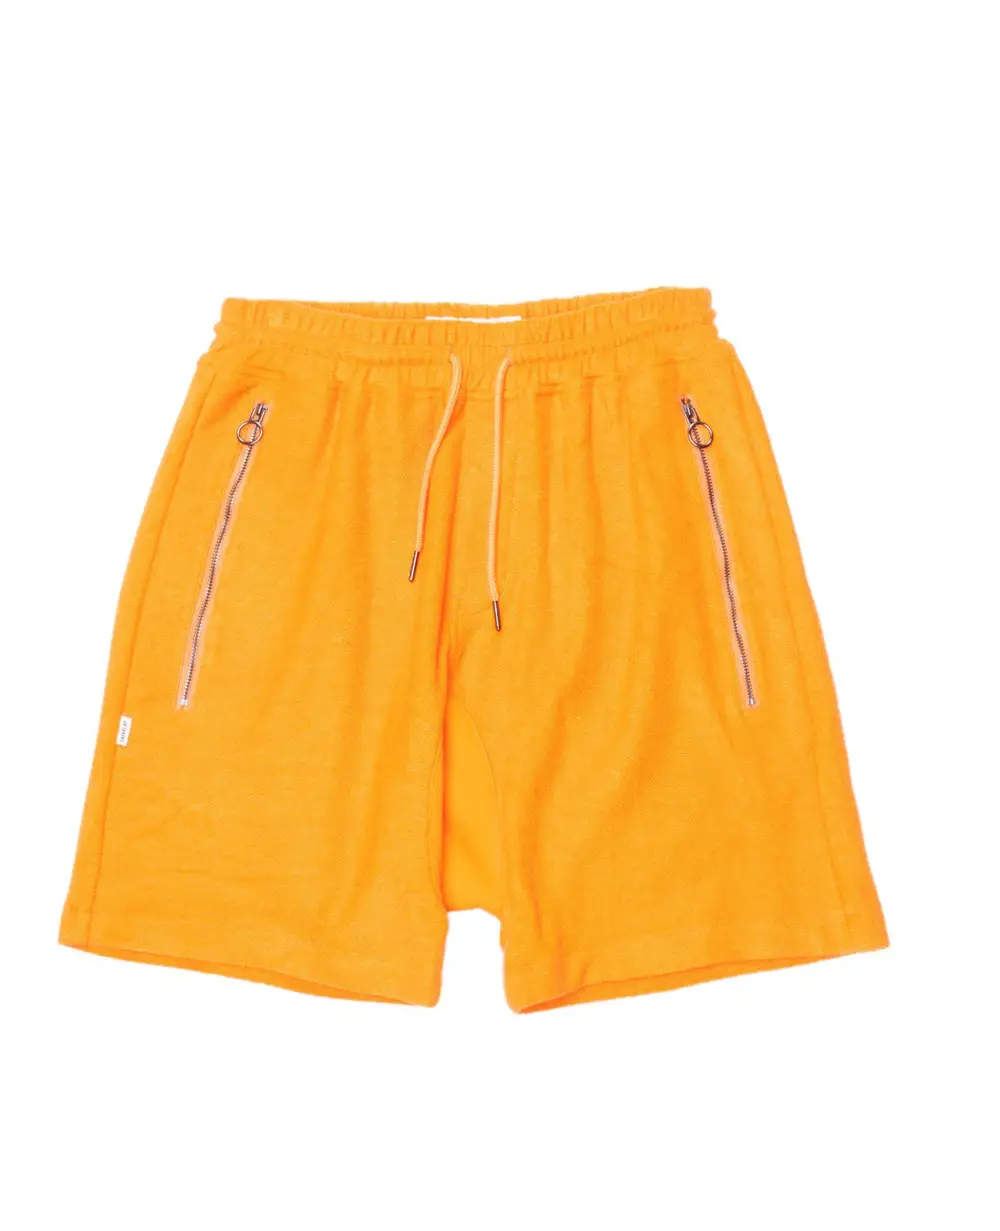 Pantalones cortos de playa para hombre, shorts de surf personalizados, modernos y de alta calidad, para verano, venta al por mayor